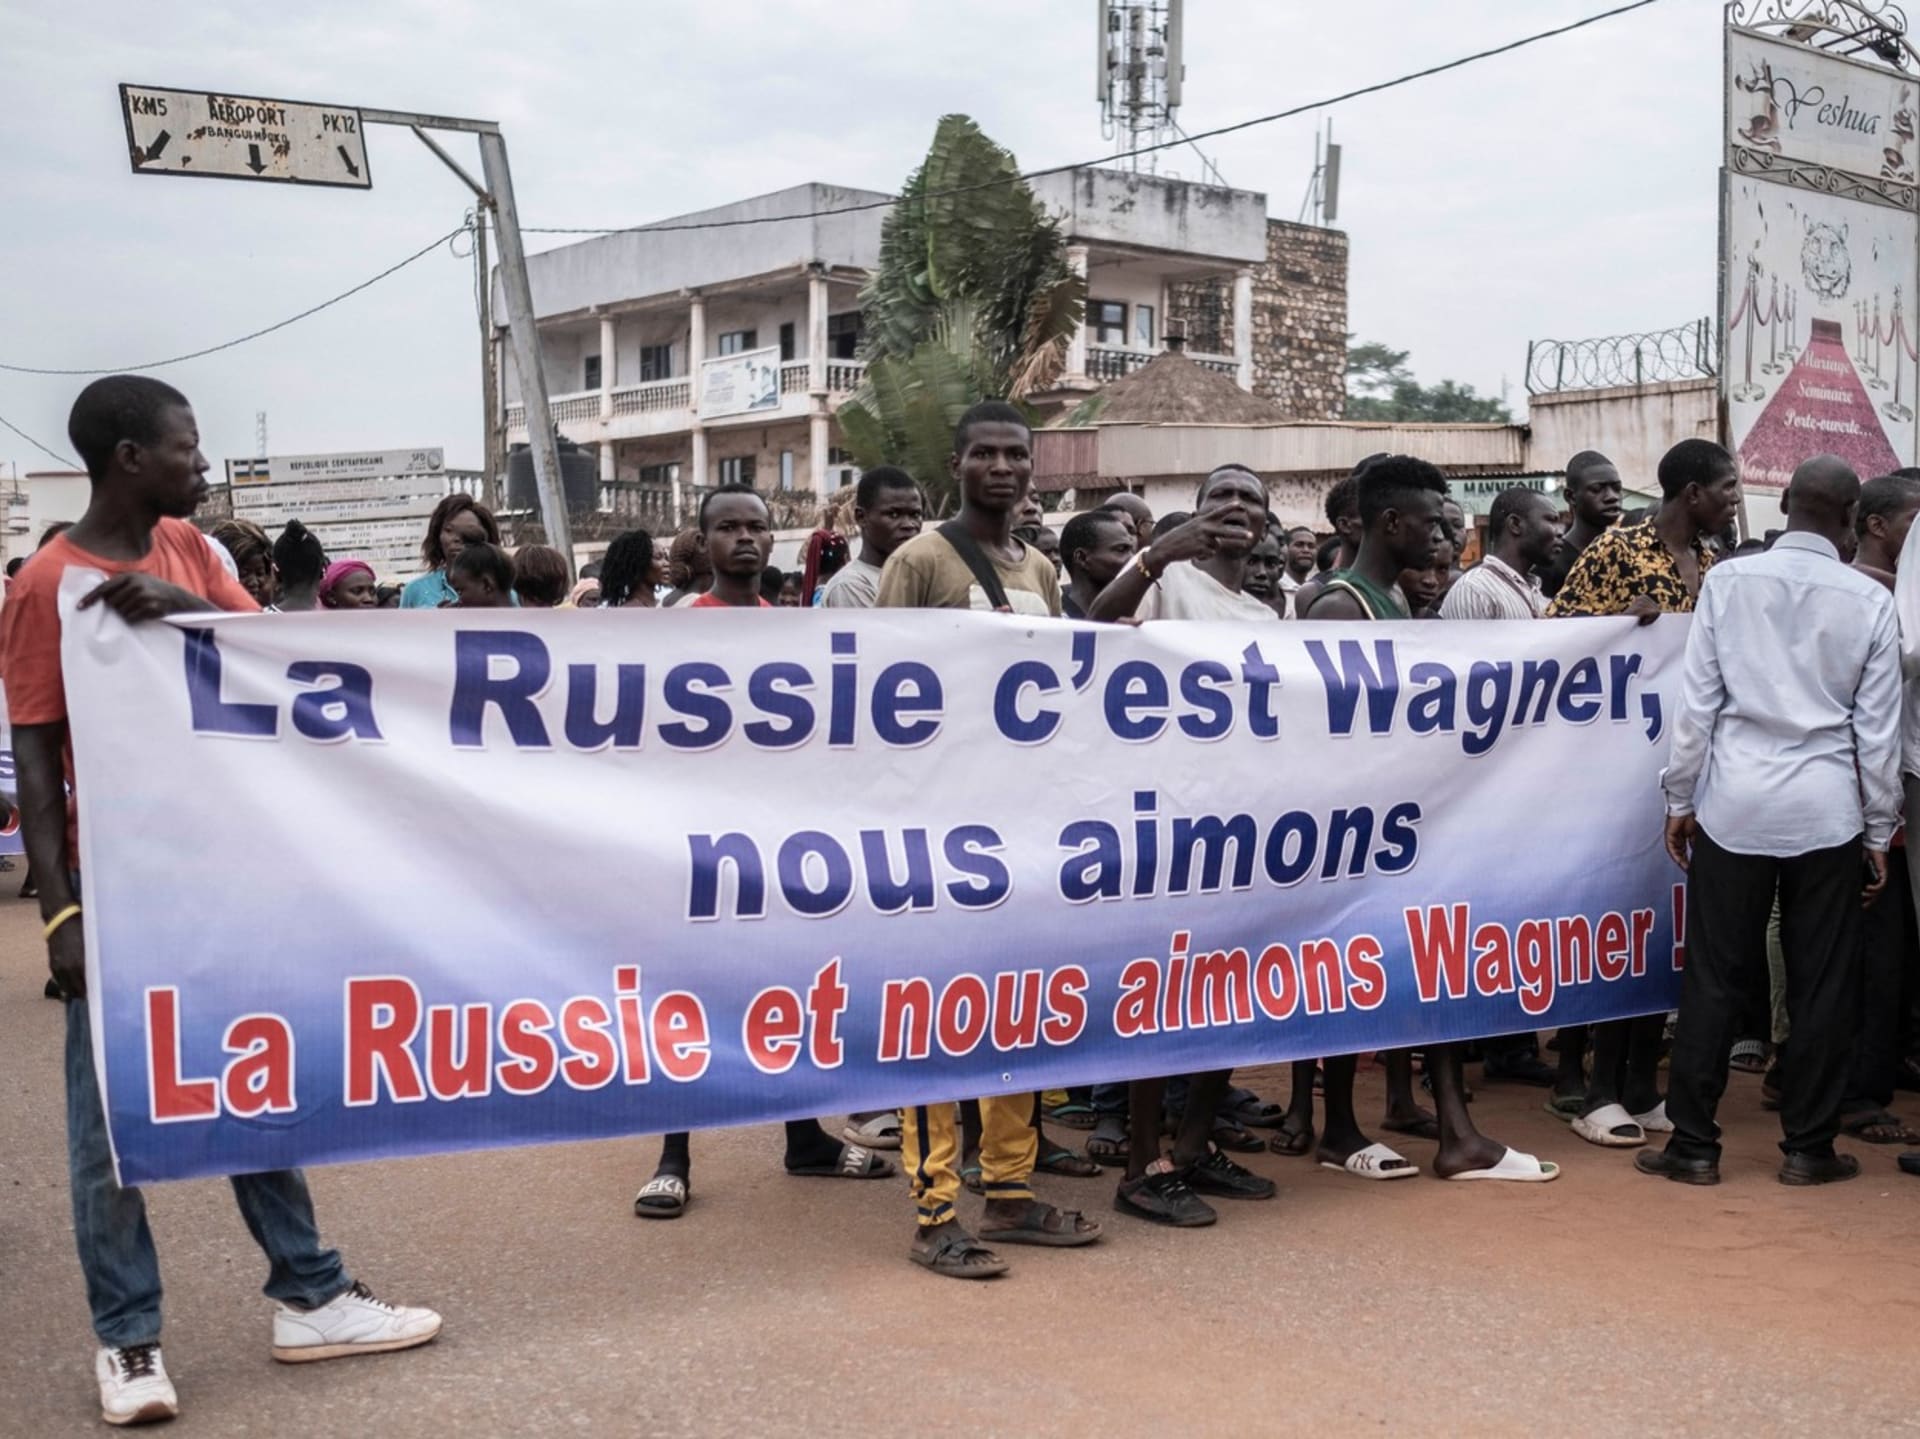 Rusové a vagnerovci jsou ve Středoafrické republice silně zakořenění. Podle všeho i populární